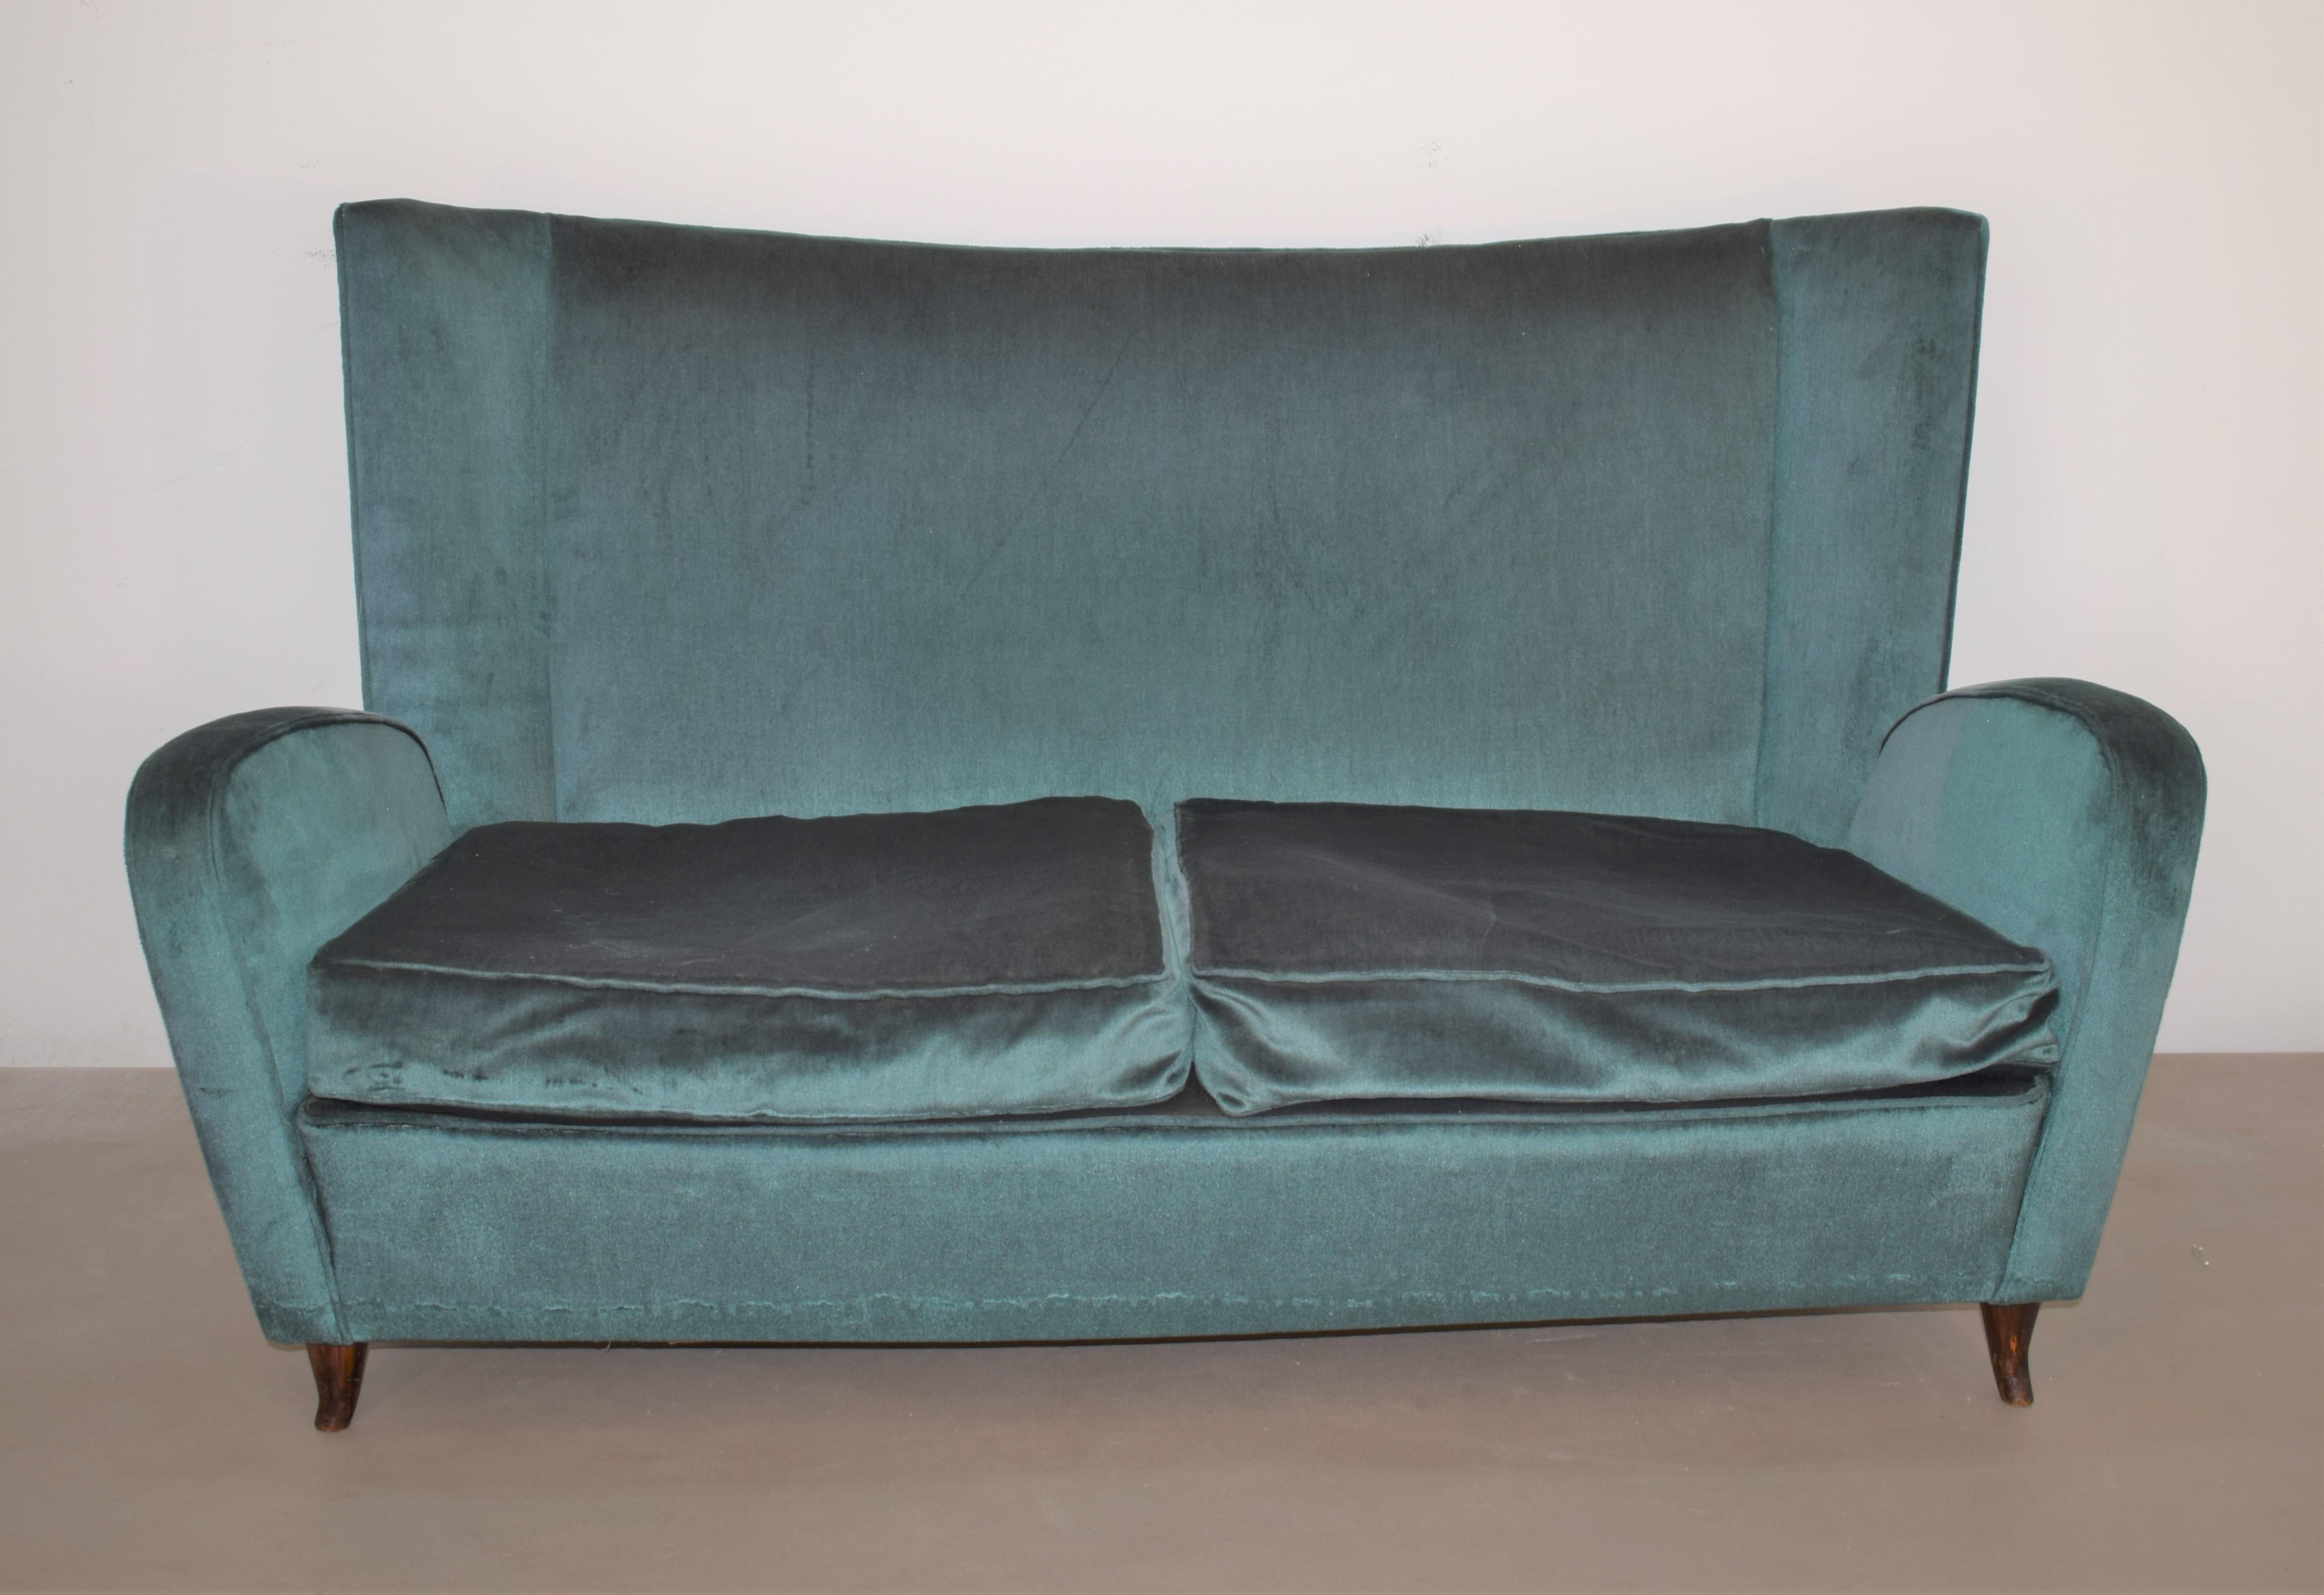 Italienisches Sofa Mod. Bristol von Paolo Buffa, 1950er Jahre.
Abmessungen: H= 82 cm; B= 140 cm; T= 75 cm; H-Sitz=32 cm.